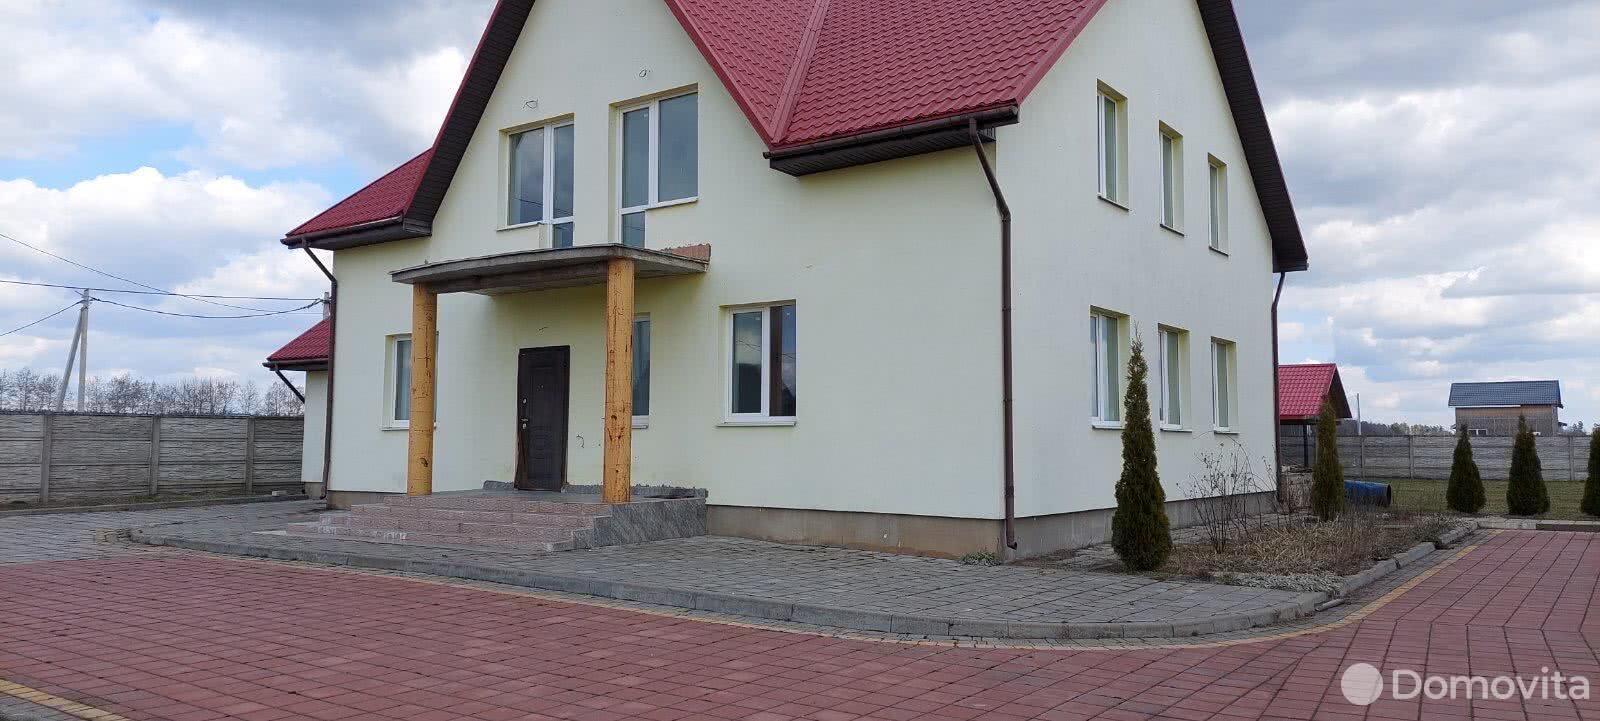 Продажа 2-этажного дома в Вязье, Могилевская область ул. Восточная, 89900USD, код 633862 - фото 1